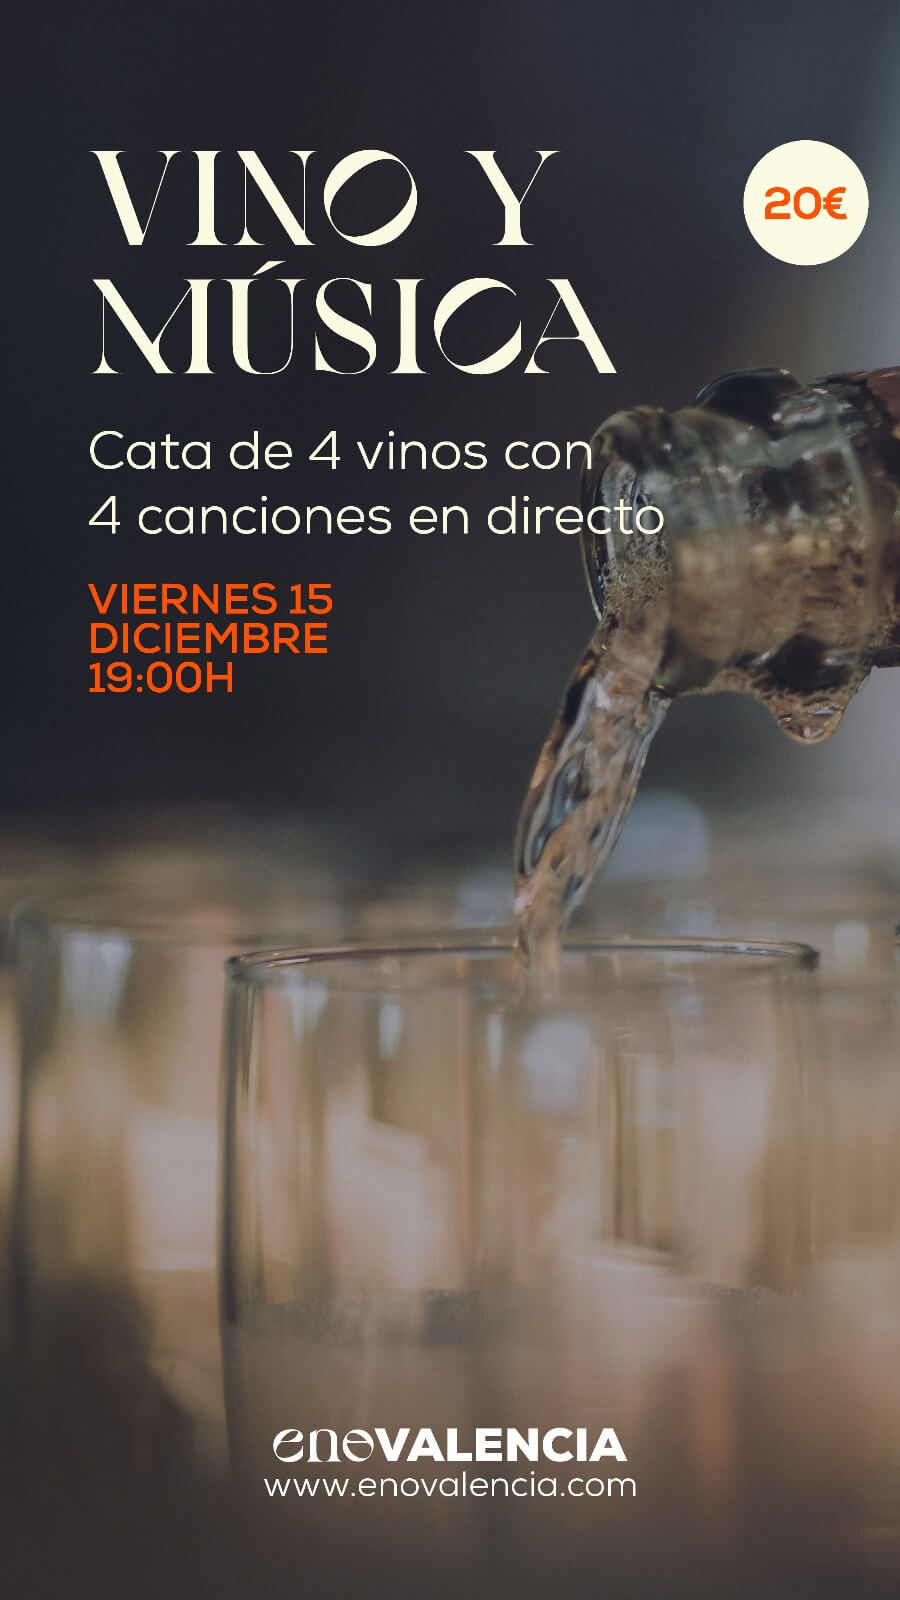 Vino y música Cata 4 Vinos y 4 Canciones de Diciembre EnoValencia - Cata, eventos y venta de vino 9